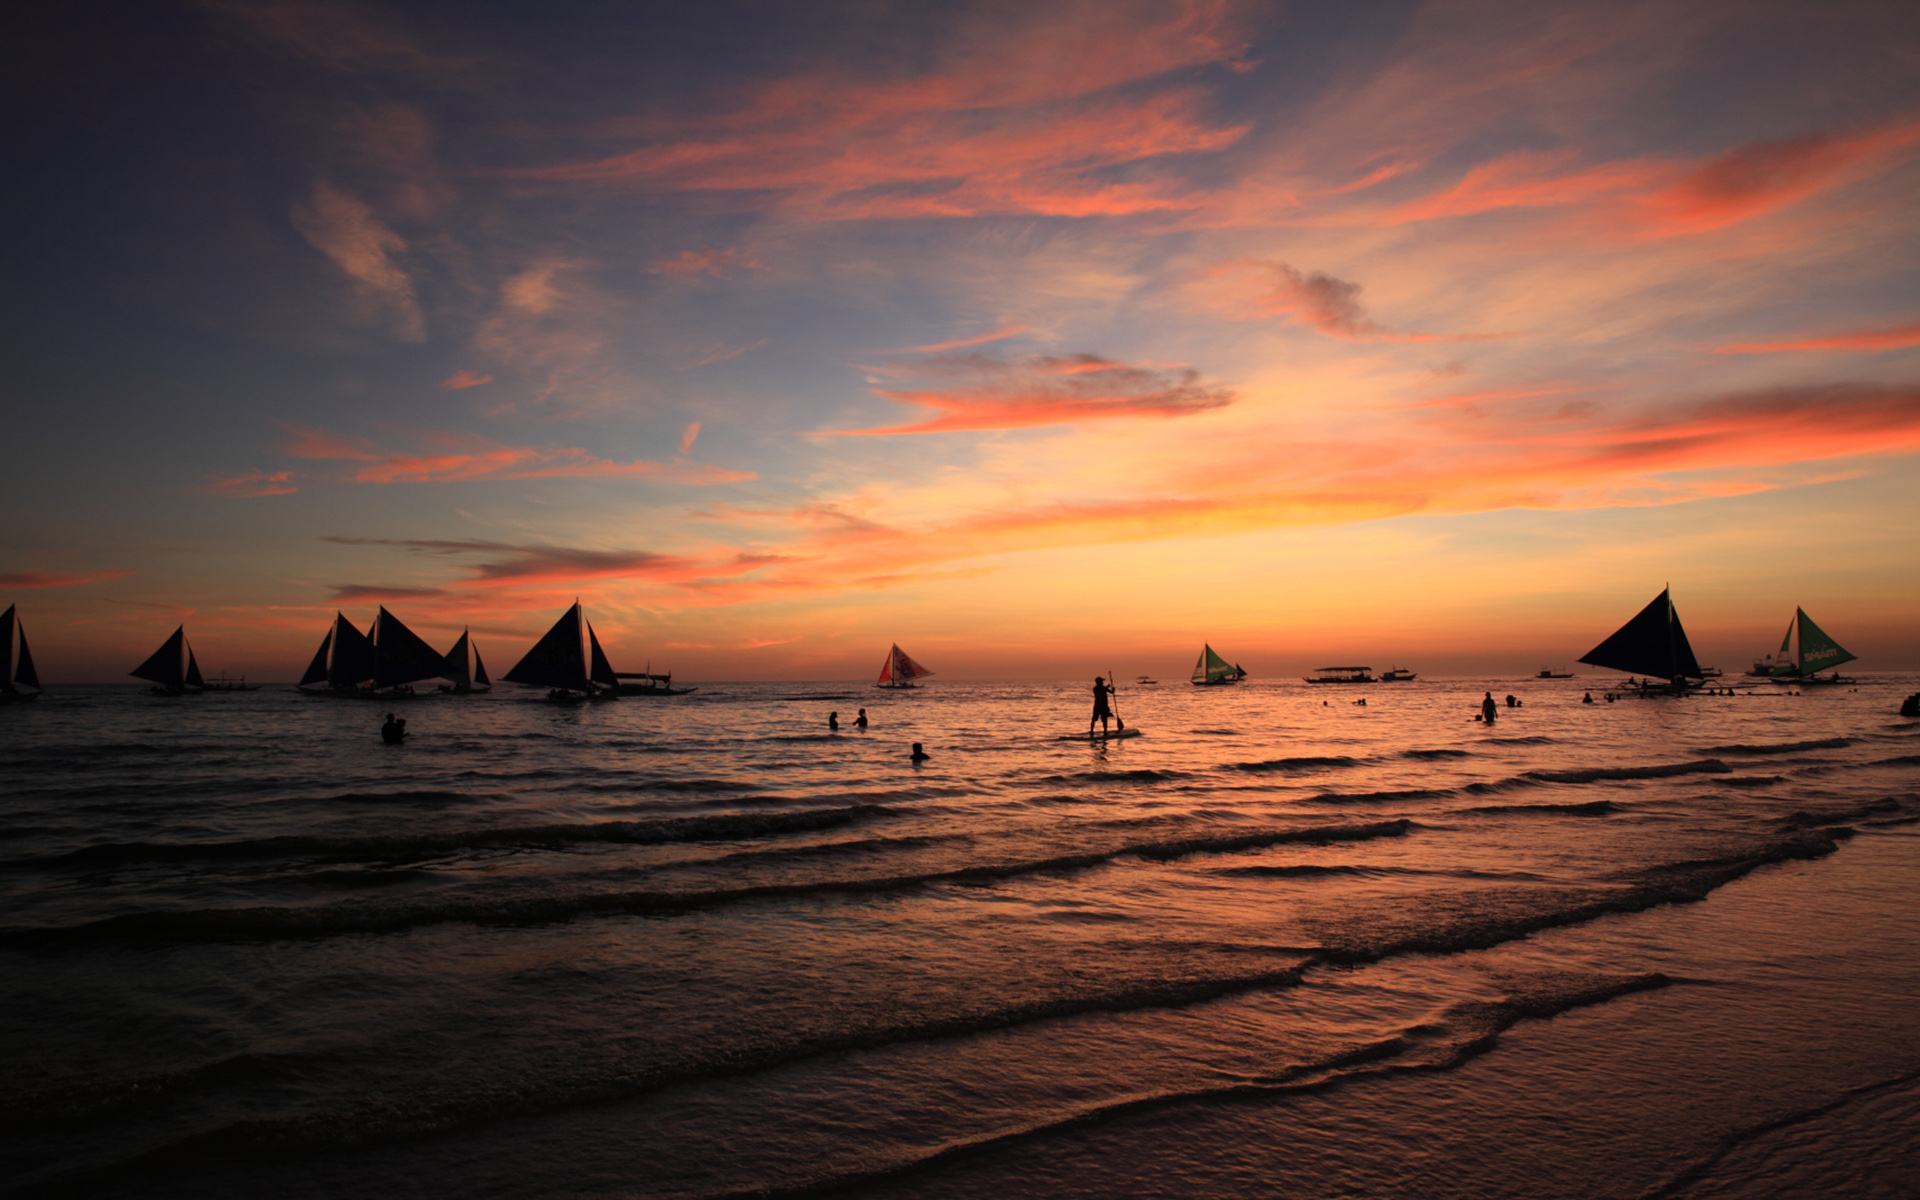 落日风景图片 菲律宾长滩岛日落晚霞风景图片(7)